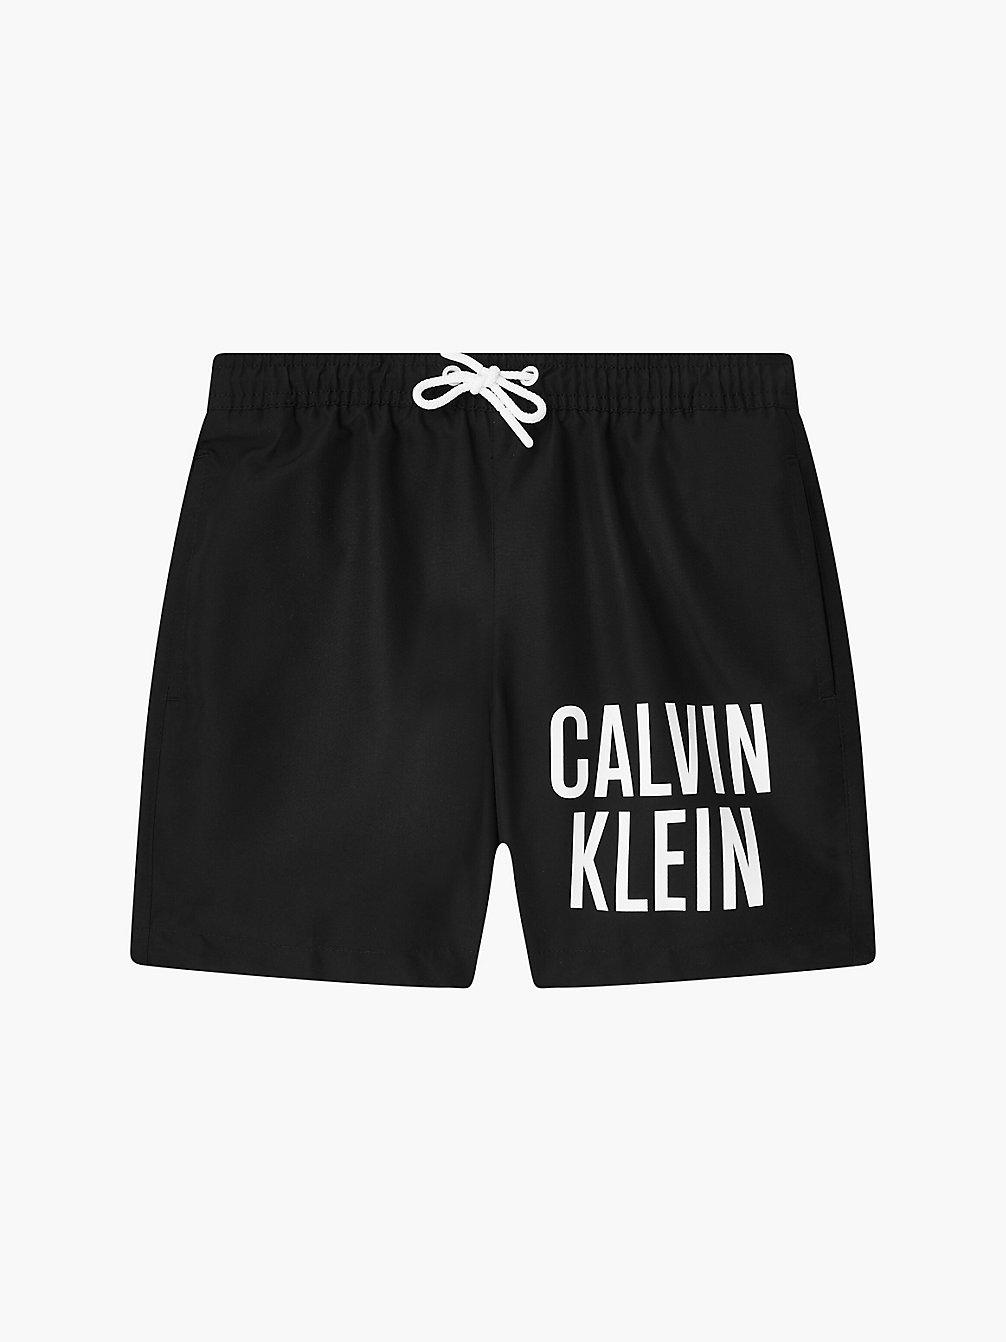 PVH BLACK Badeshorts Für Jungen - Intense Power undefined Jungen Calvin Klein